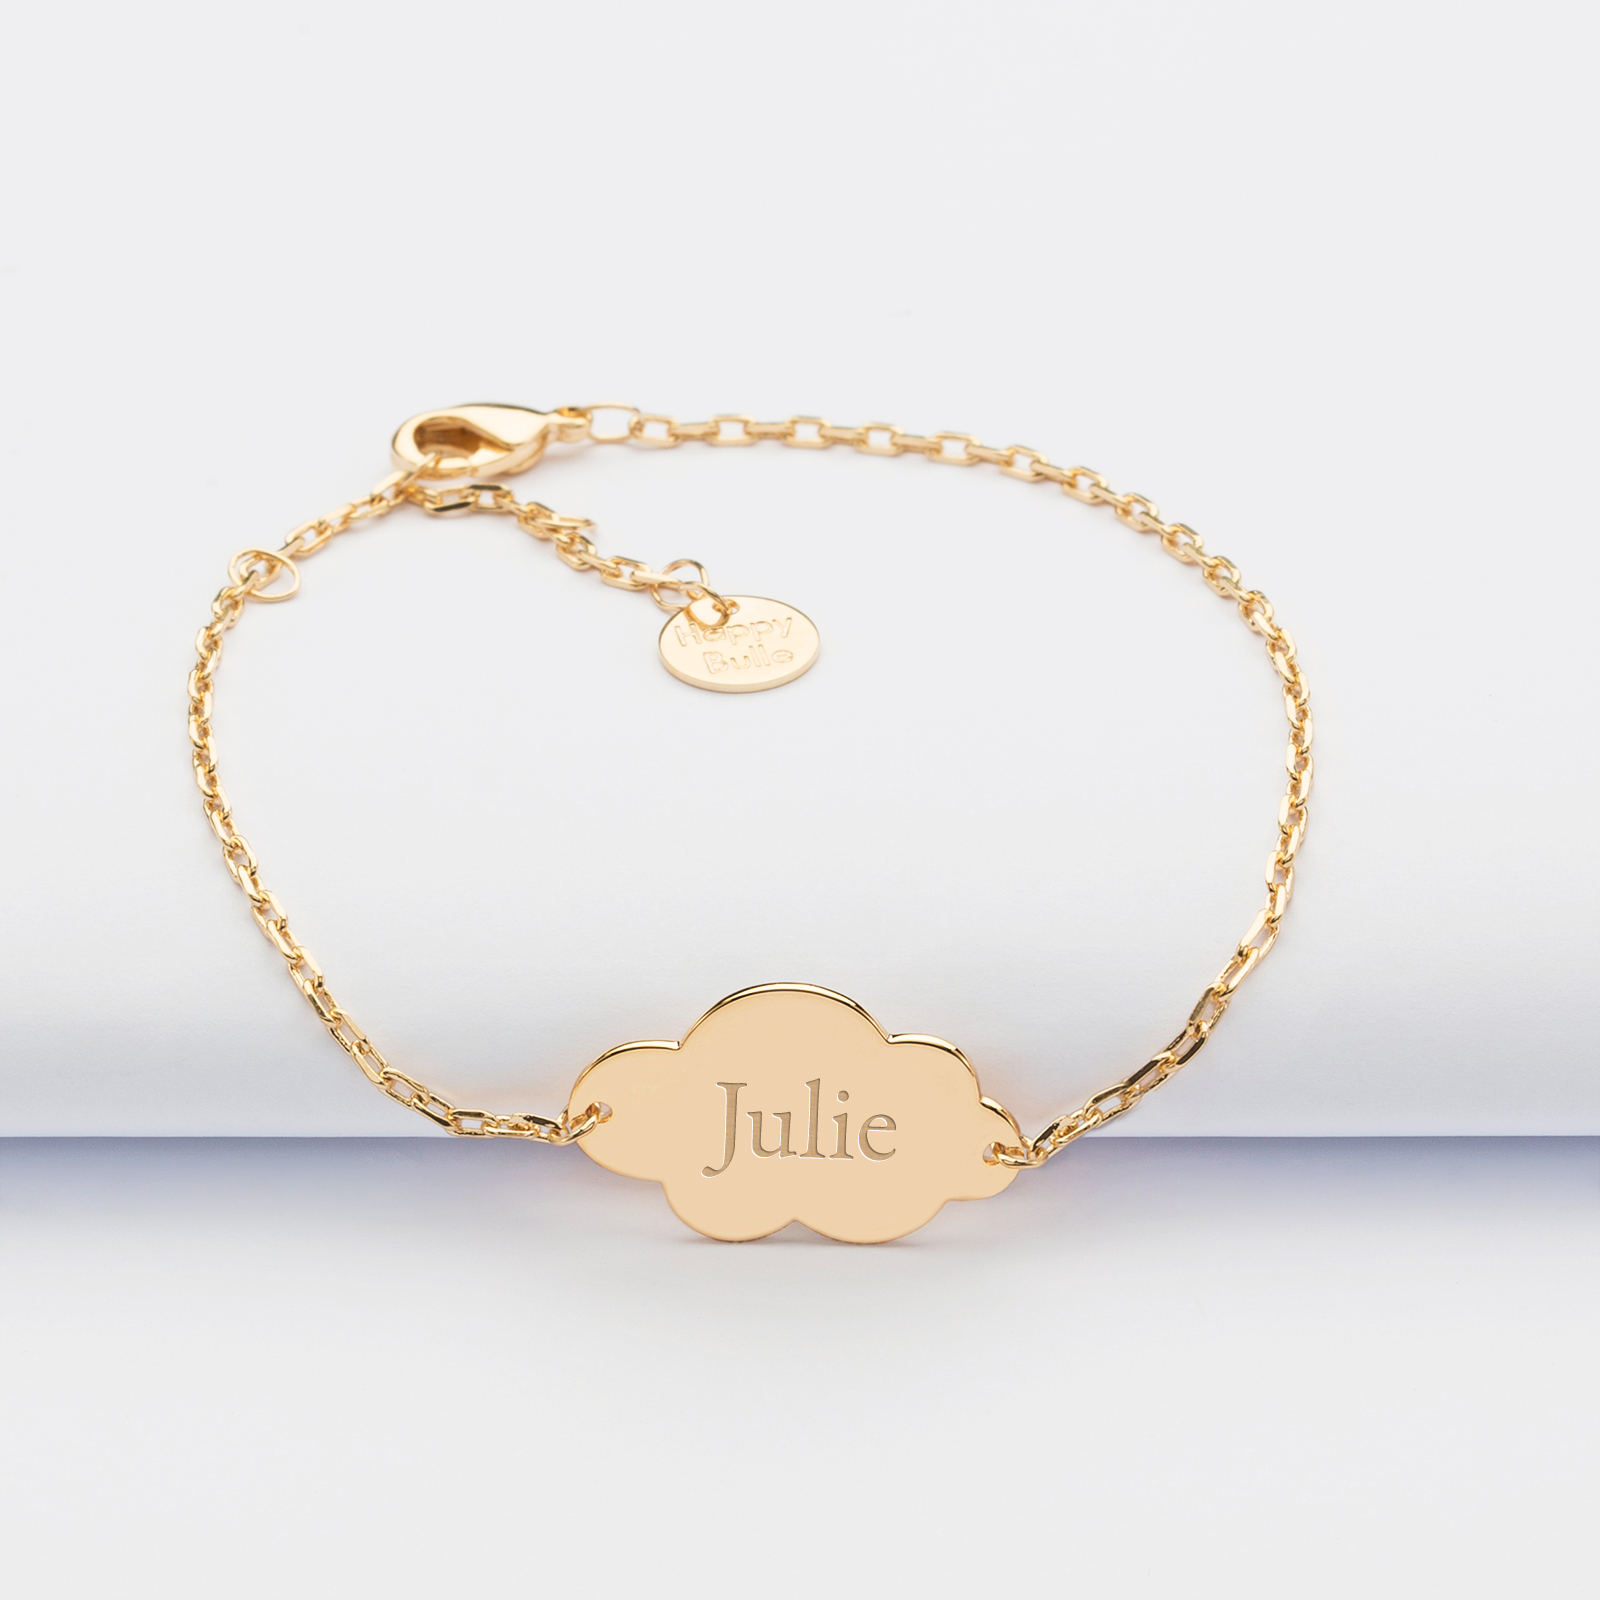 Bracelet chaine personnalisé médaille nuage gravée plaqué or 2 trous 20x14mm prénom julie